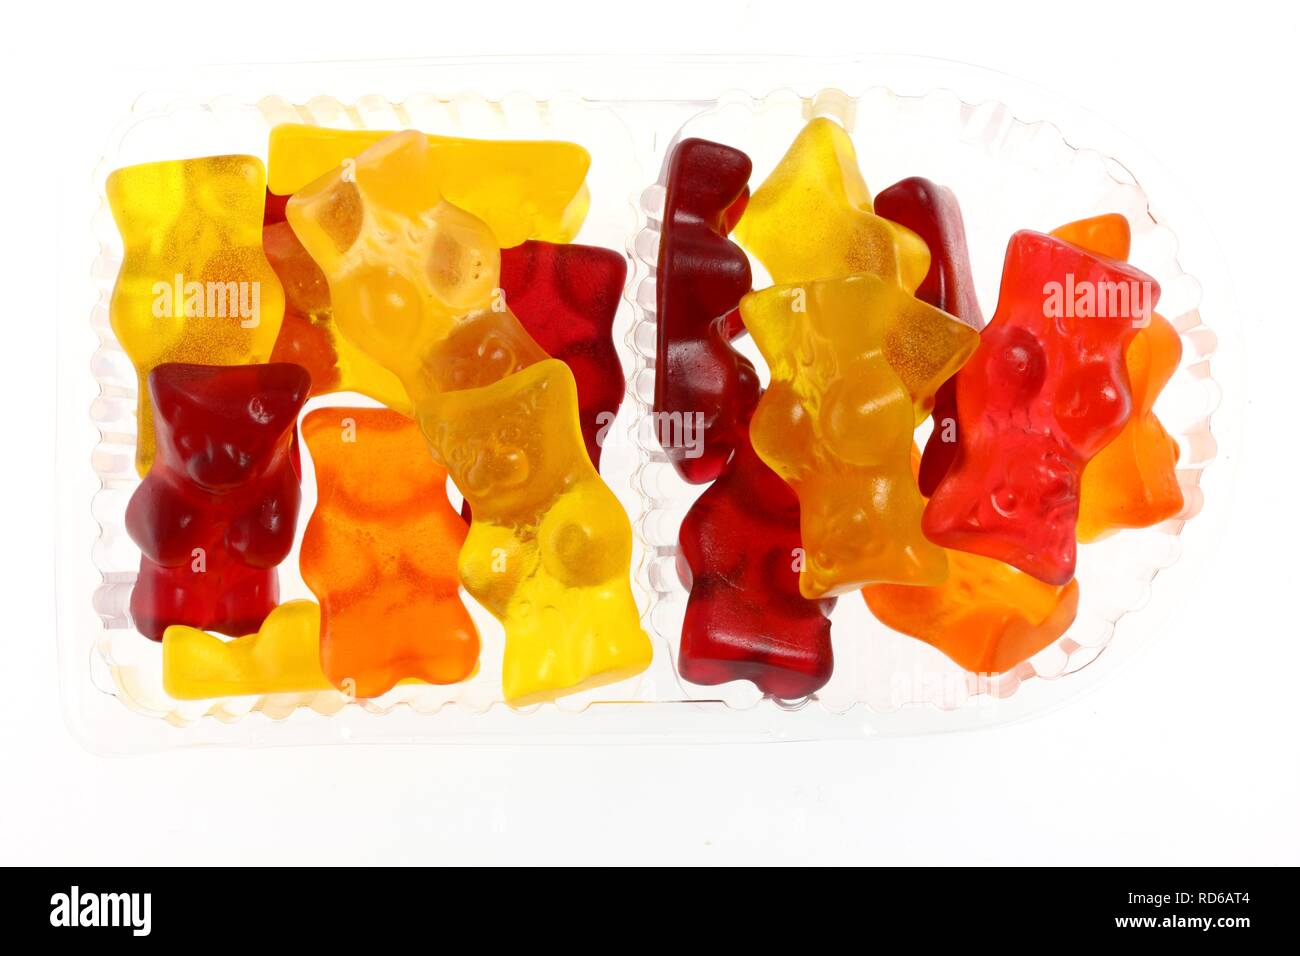 Ours gommeux de couleurs différentes dans un emballage en plastique transparent Banque D'Images